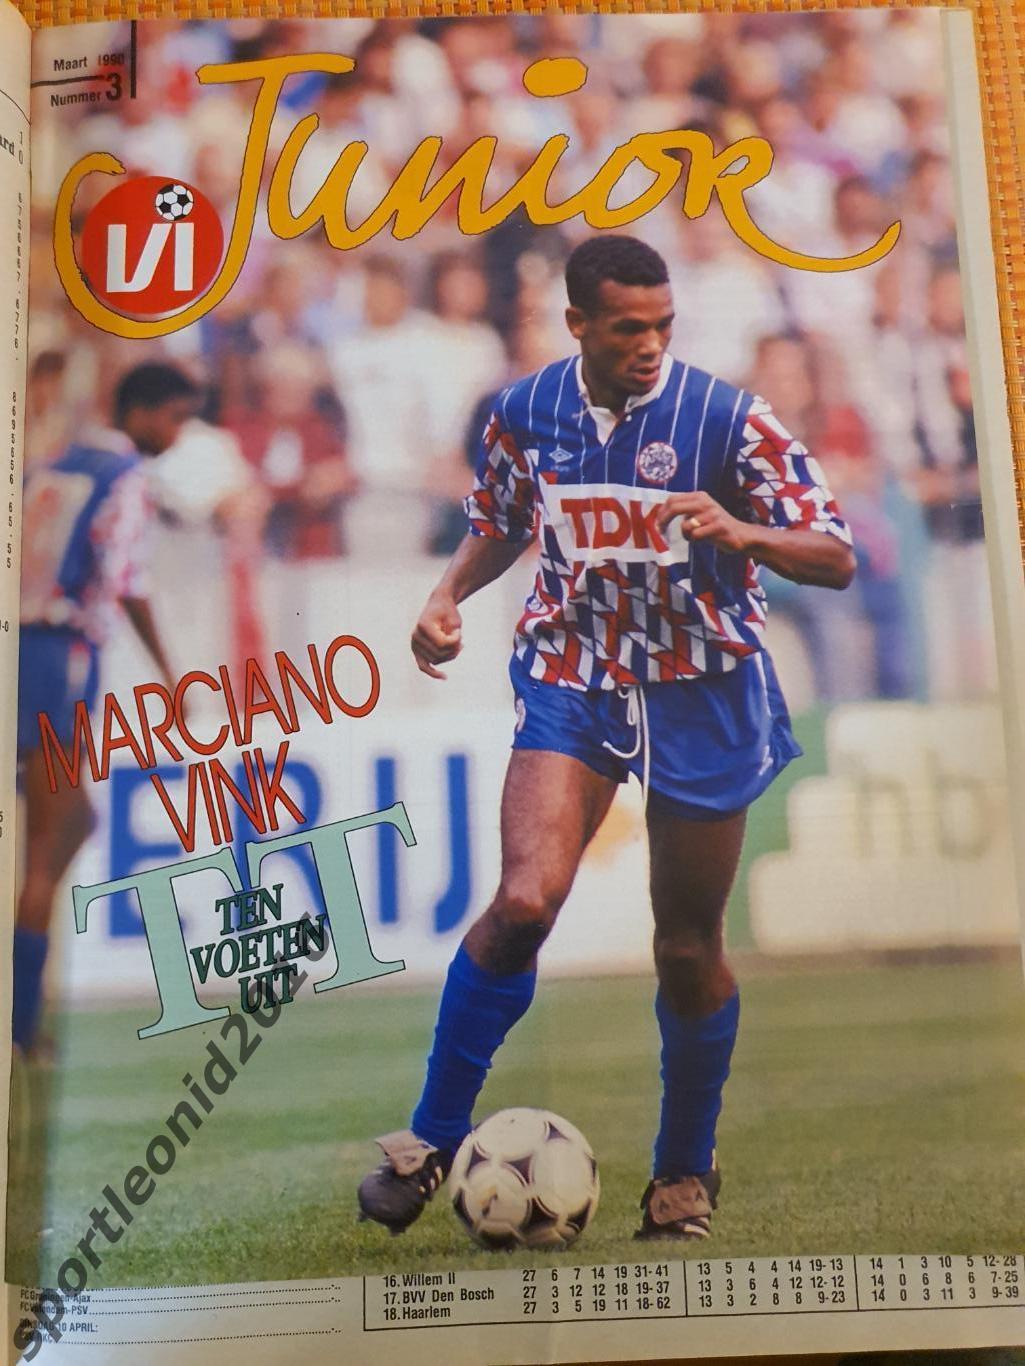 Voetbal International 1990 и 1989 годов выпуска.12 журналов.4 7